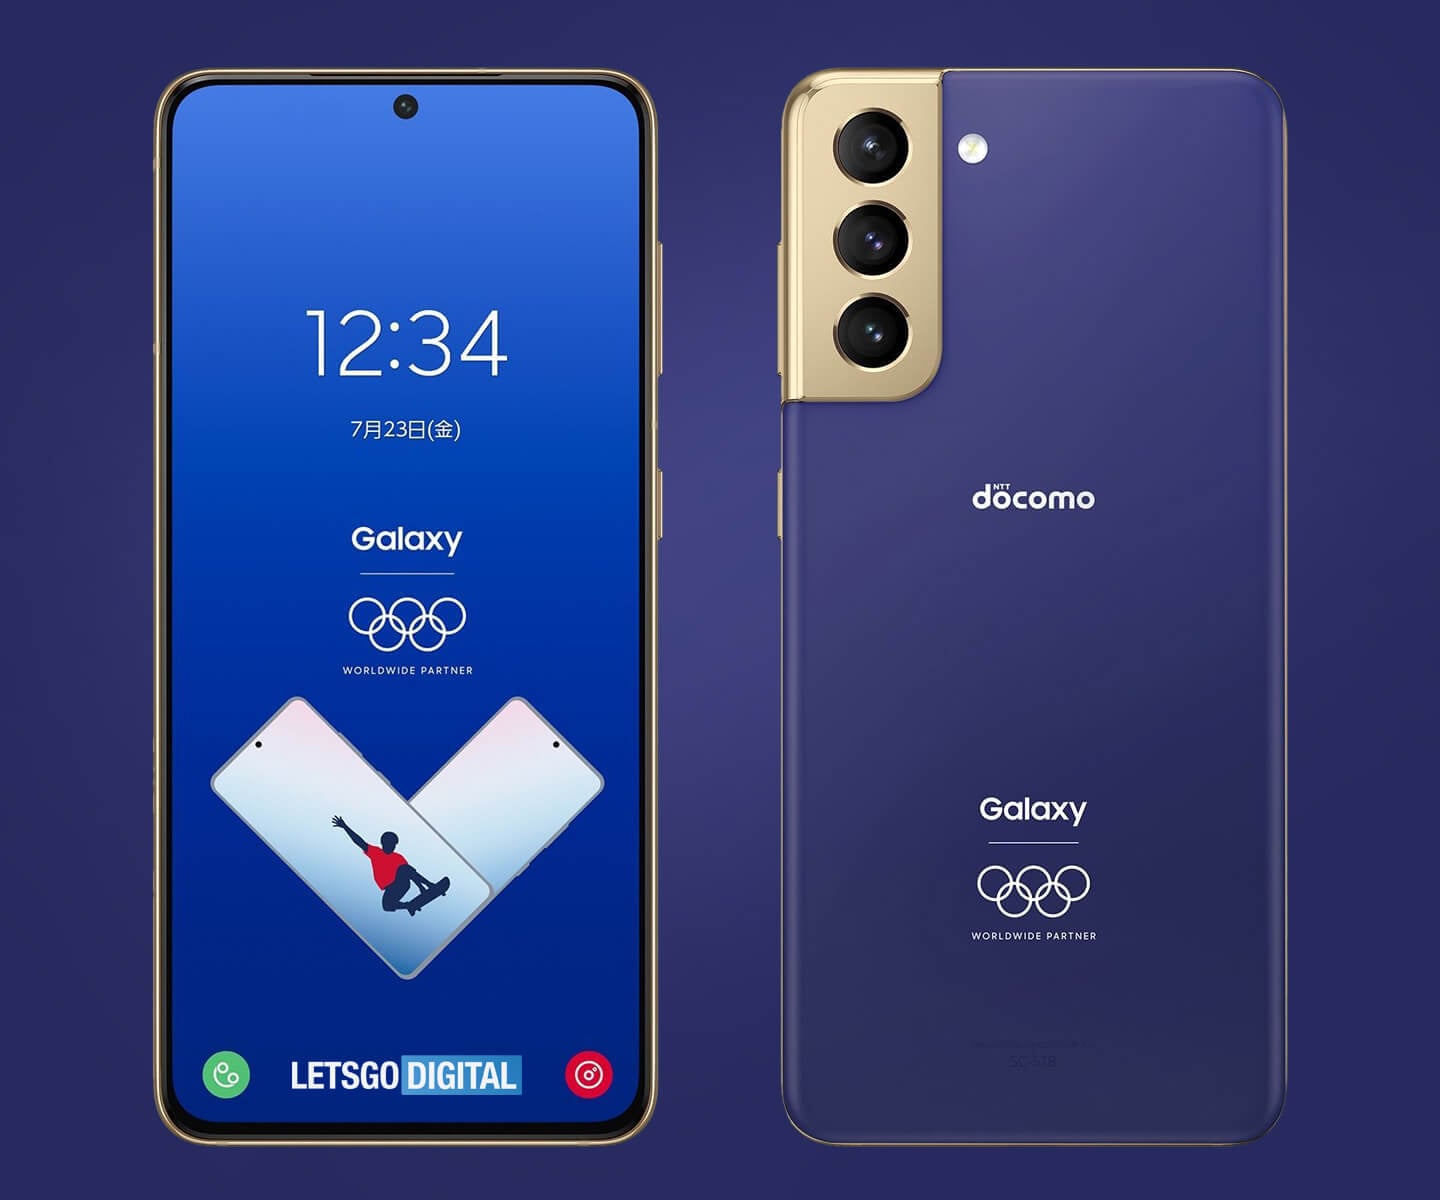 Los anillos olímpicos decoran el Samsung Galaxy S21 5G: aquí está la edición limitada para los Juegos Olímpicos (fotos)